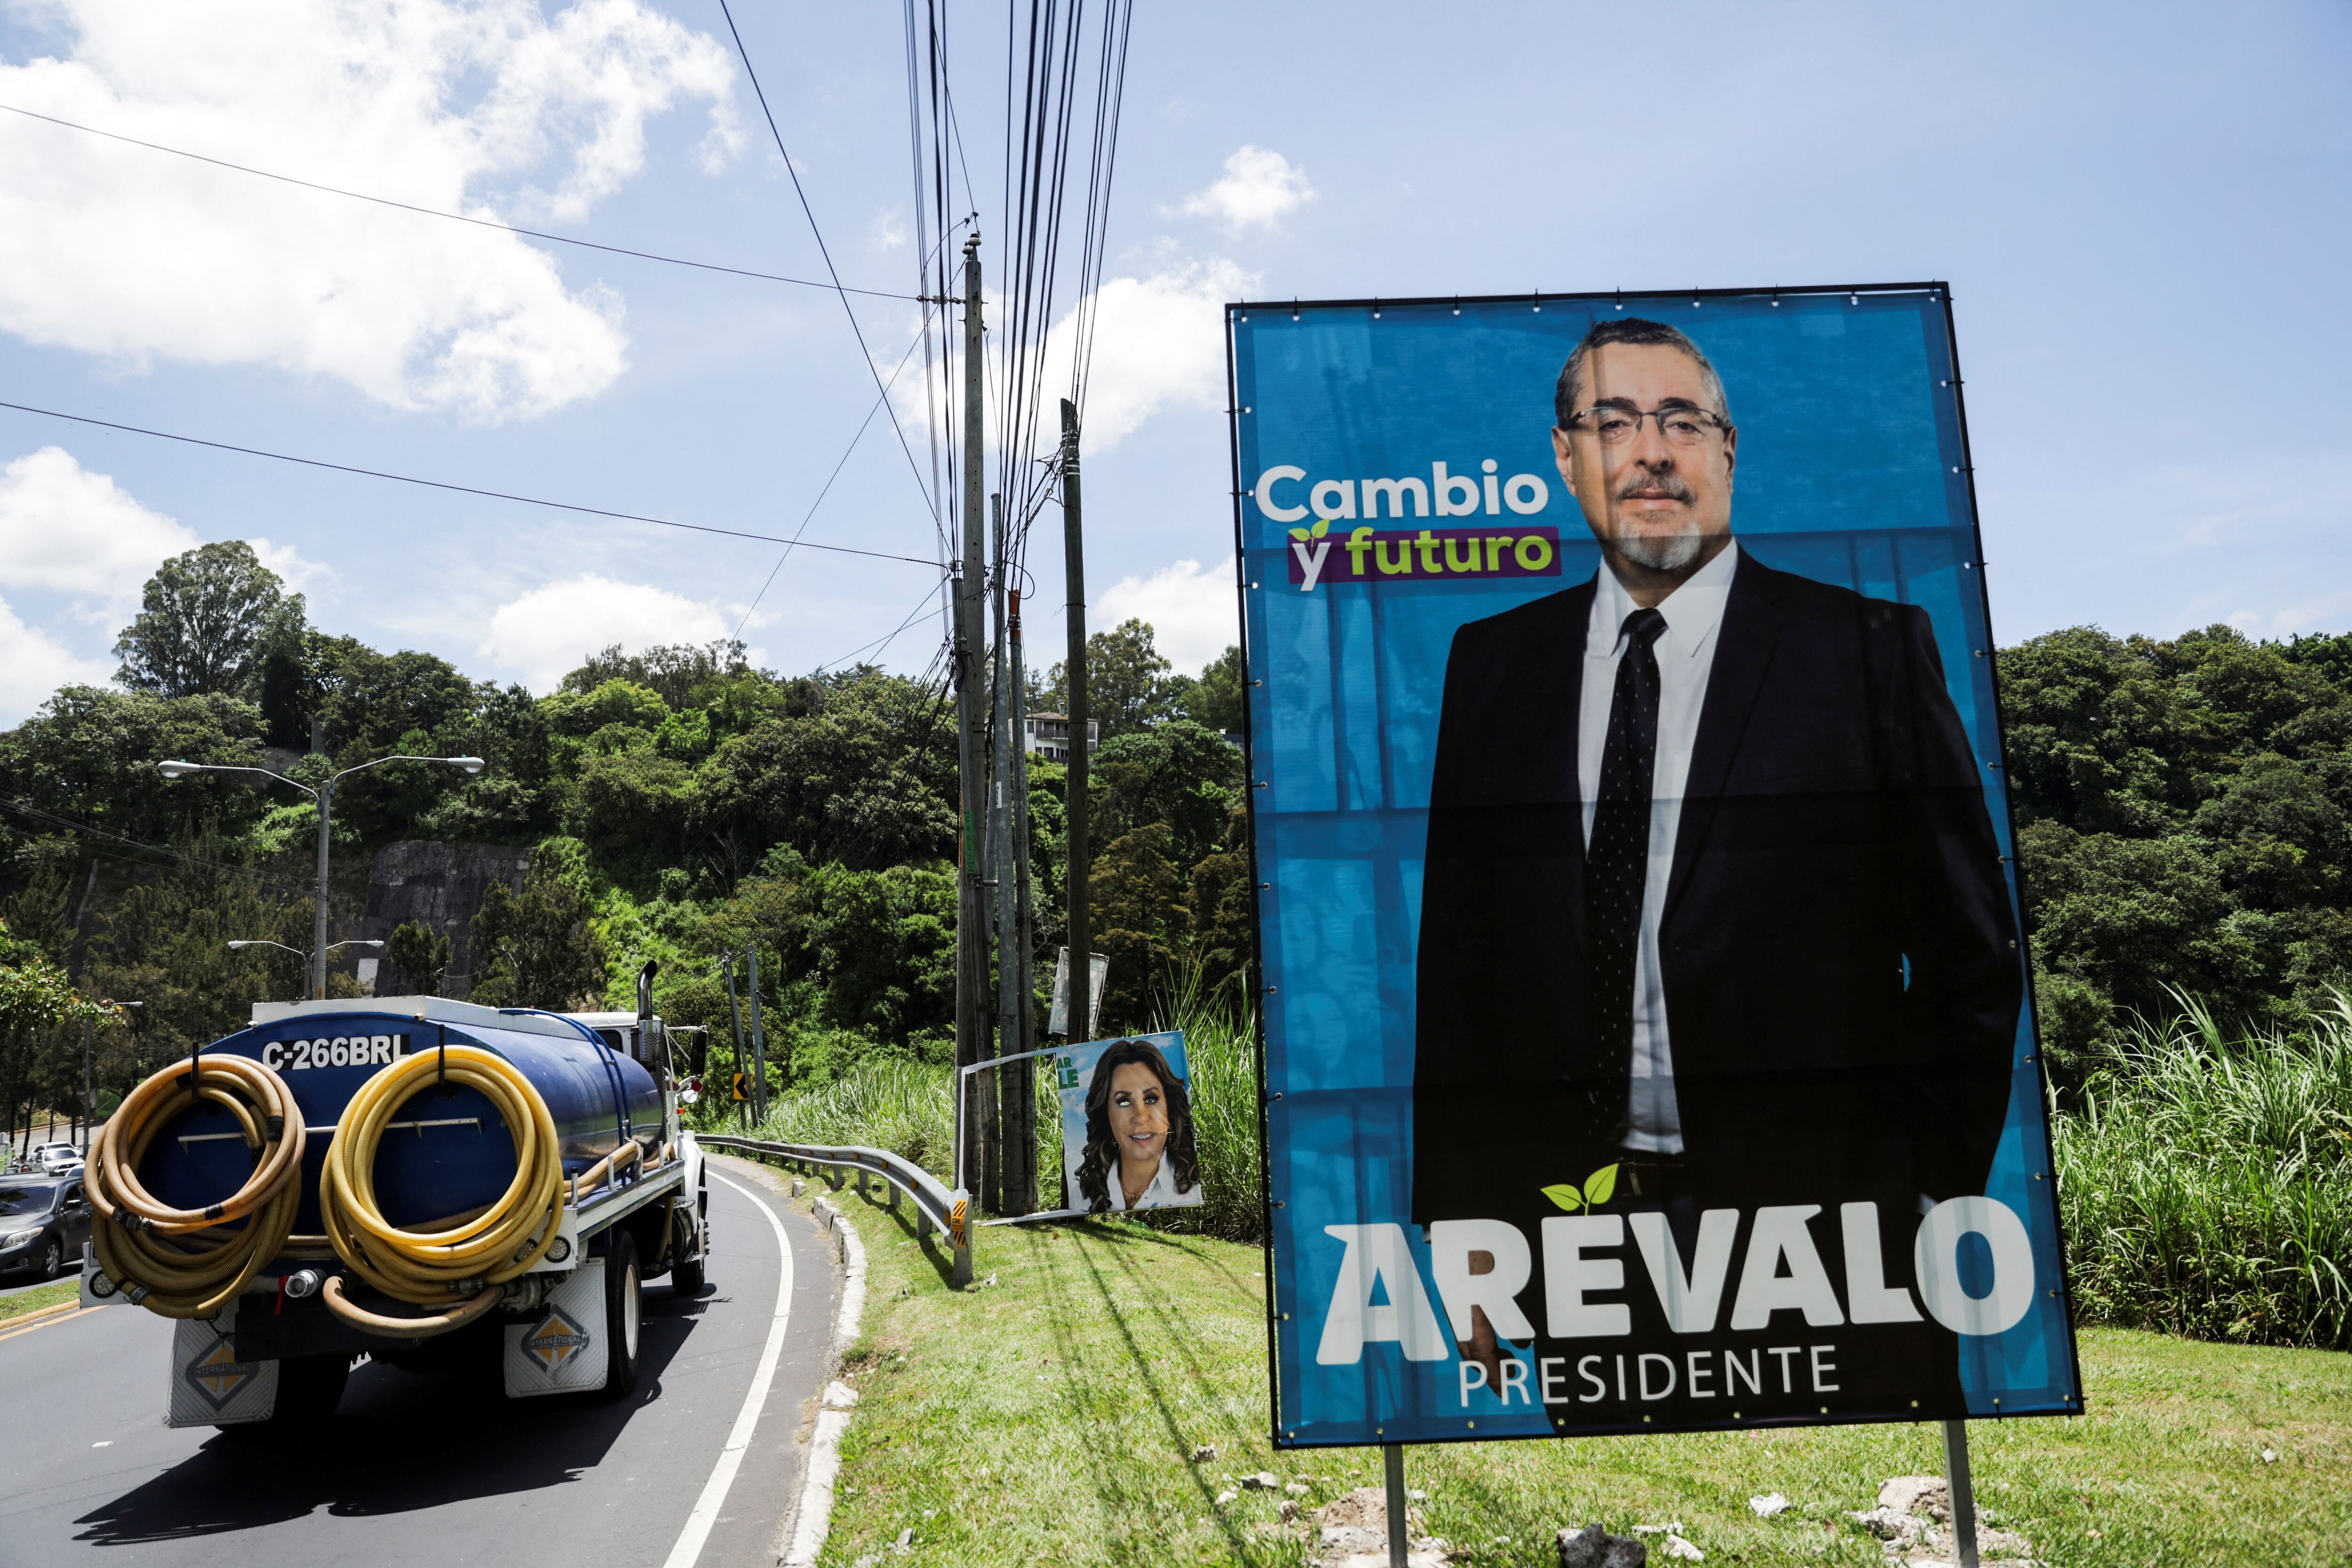 En medio de las acusaciones de corrupción en el gobierno de Guatemala, el flamante presidente José Arévalo prometió darle un nuevo rumbo al país (REUTERS/Pilar Olivares)